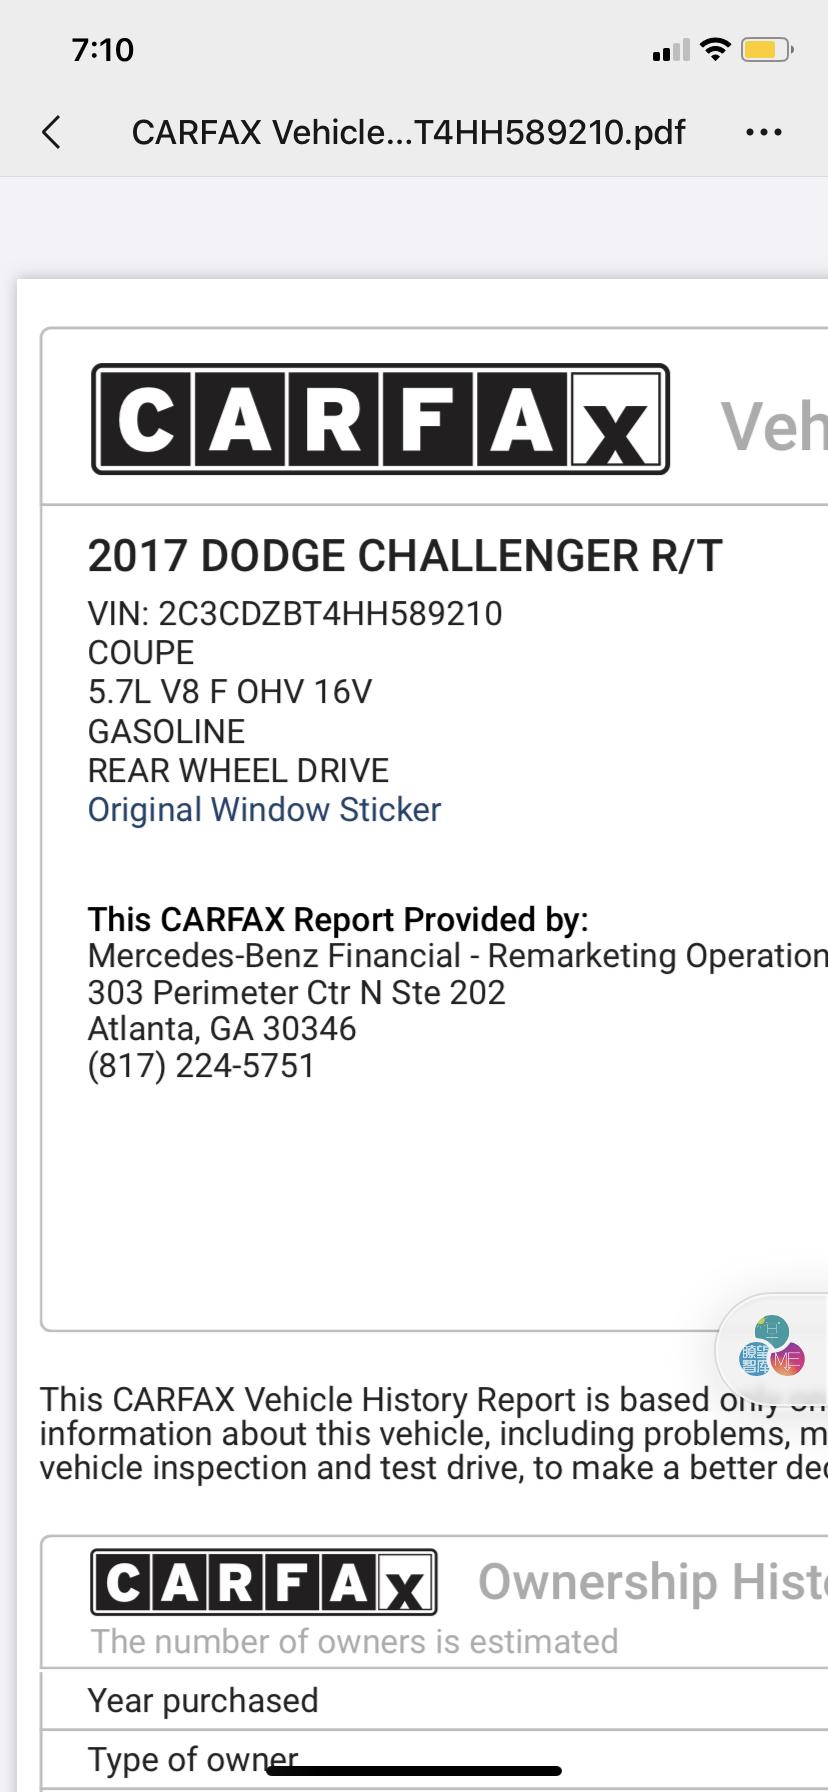 道奇挑战者 大神们评价下这辆车值得入手吗2017 CHALLENGER T/A PLUS5.7L V8 4800mile